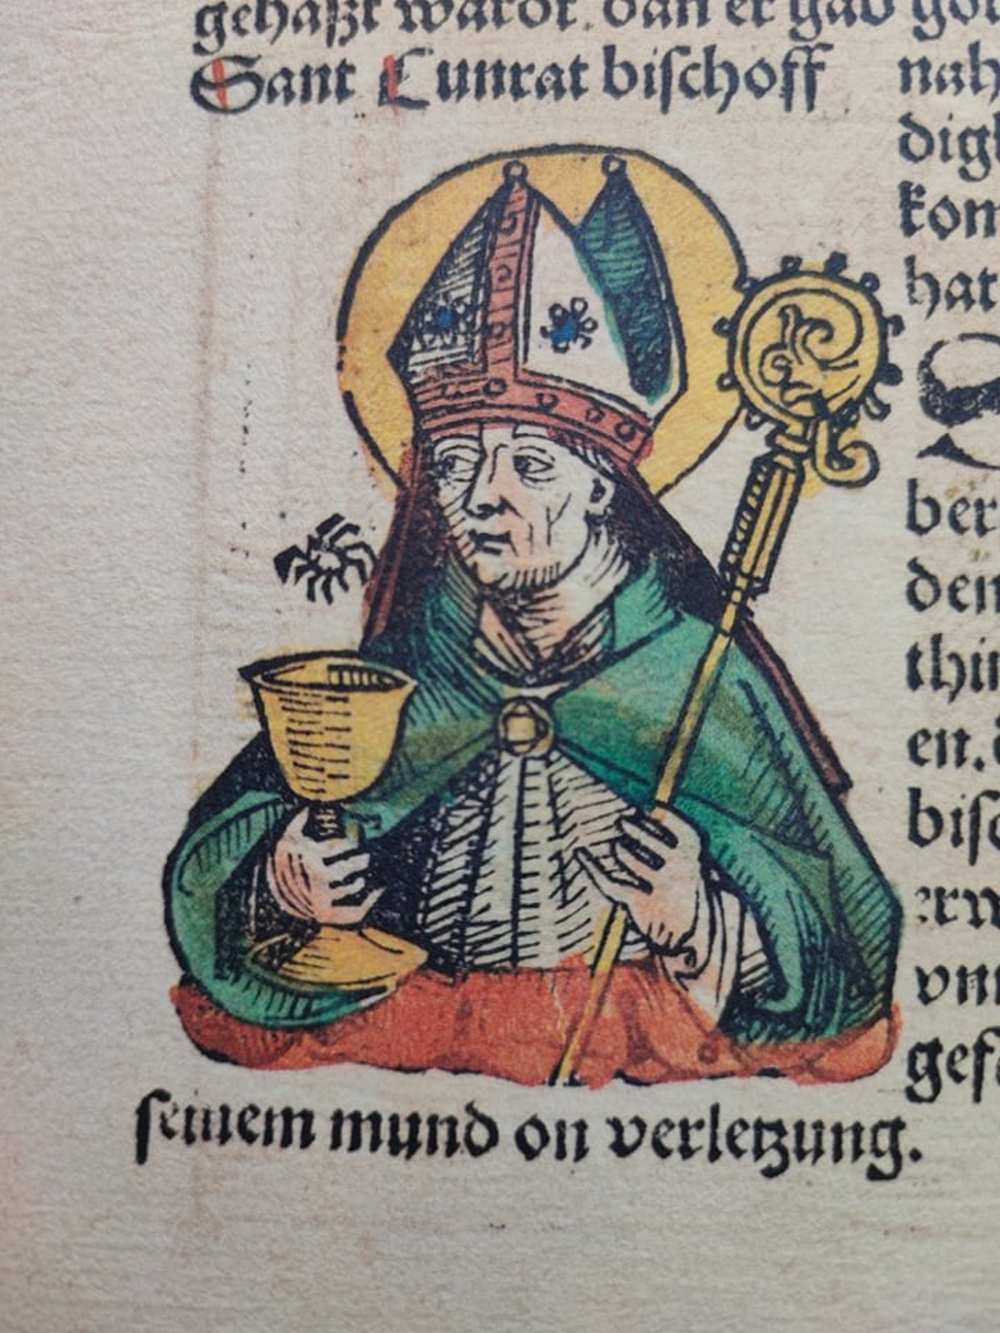 Szent Konrád. In: Schedel, Hartmann, Liber chronicarum: Das Buch der Chroniken, Nürnberg, 1493. Számos színezett fametszettel. RNYT, Inc. 88 – Régi Nyomtatványok Tára